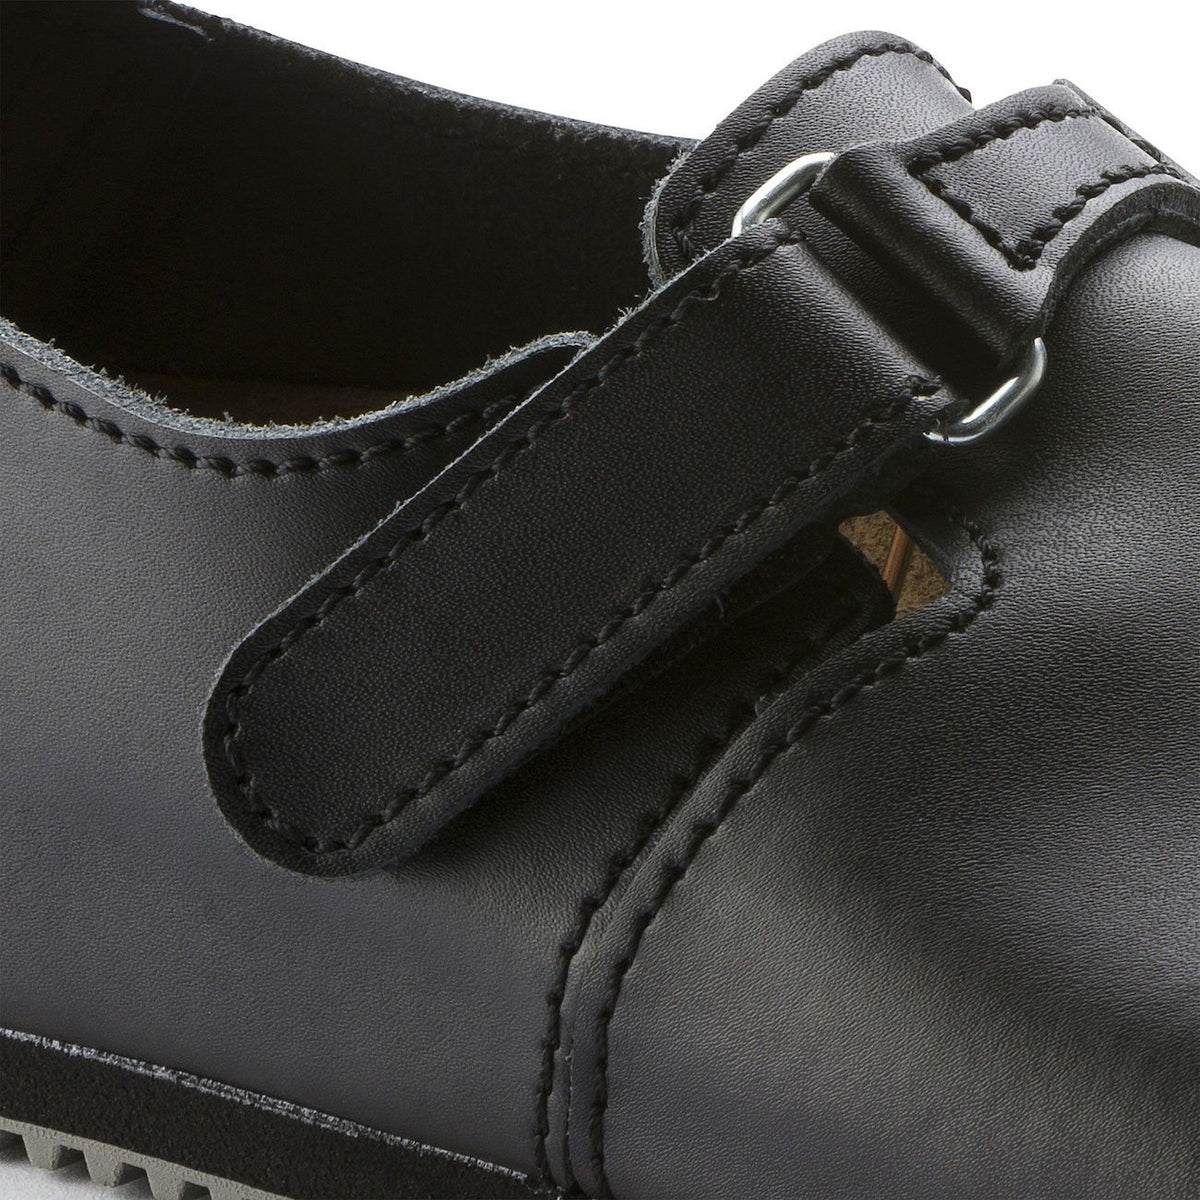 Birkenstock Professional, Linz SL, Super Grip Sole Leather Regular Fit, Black Shoes Birkenstock Professional 